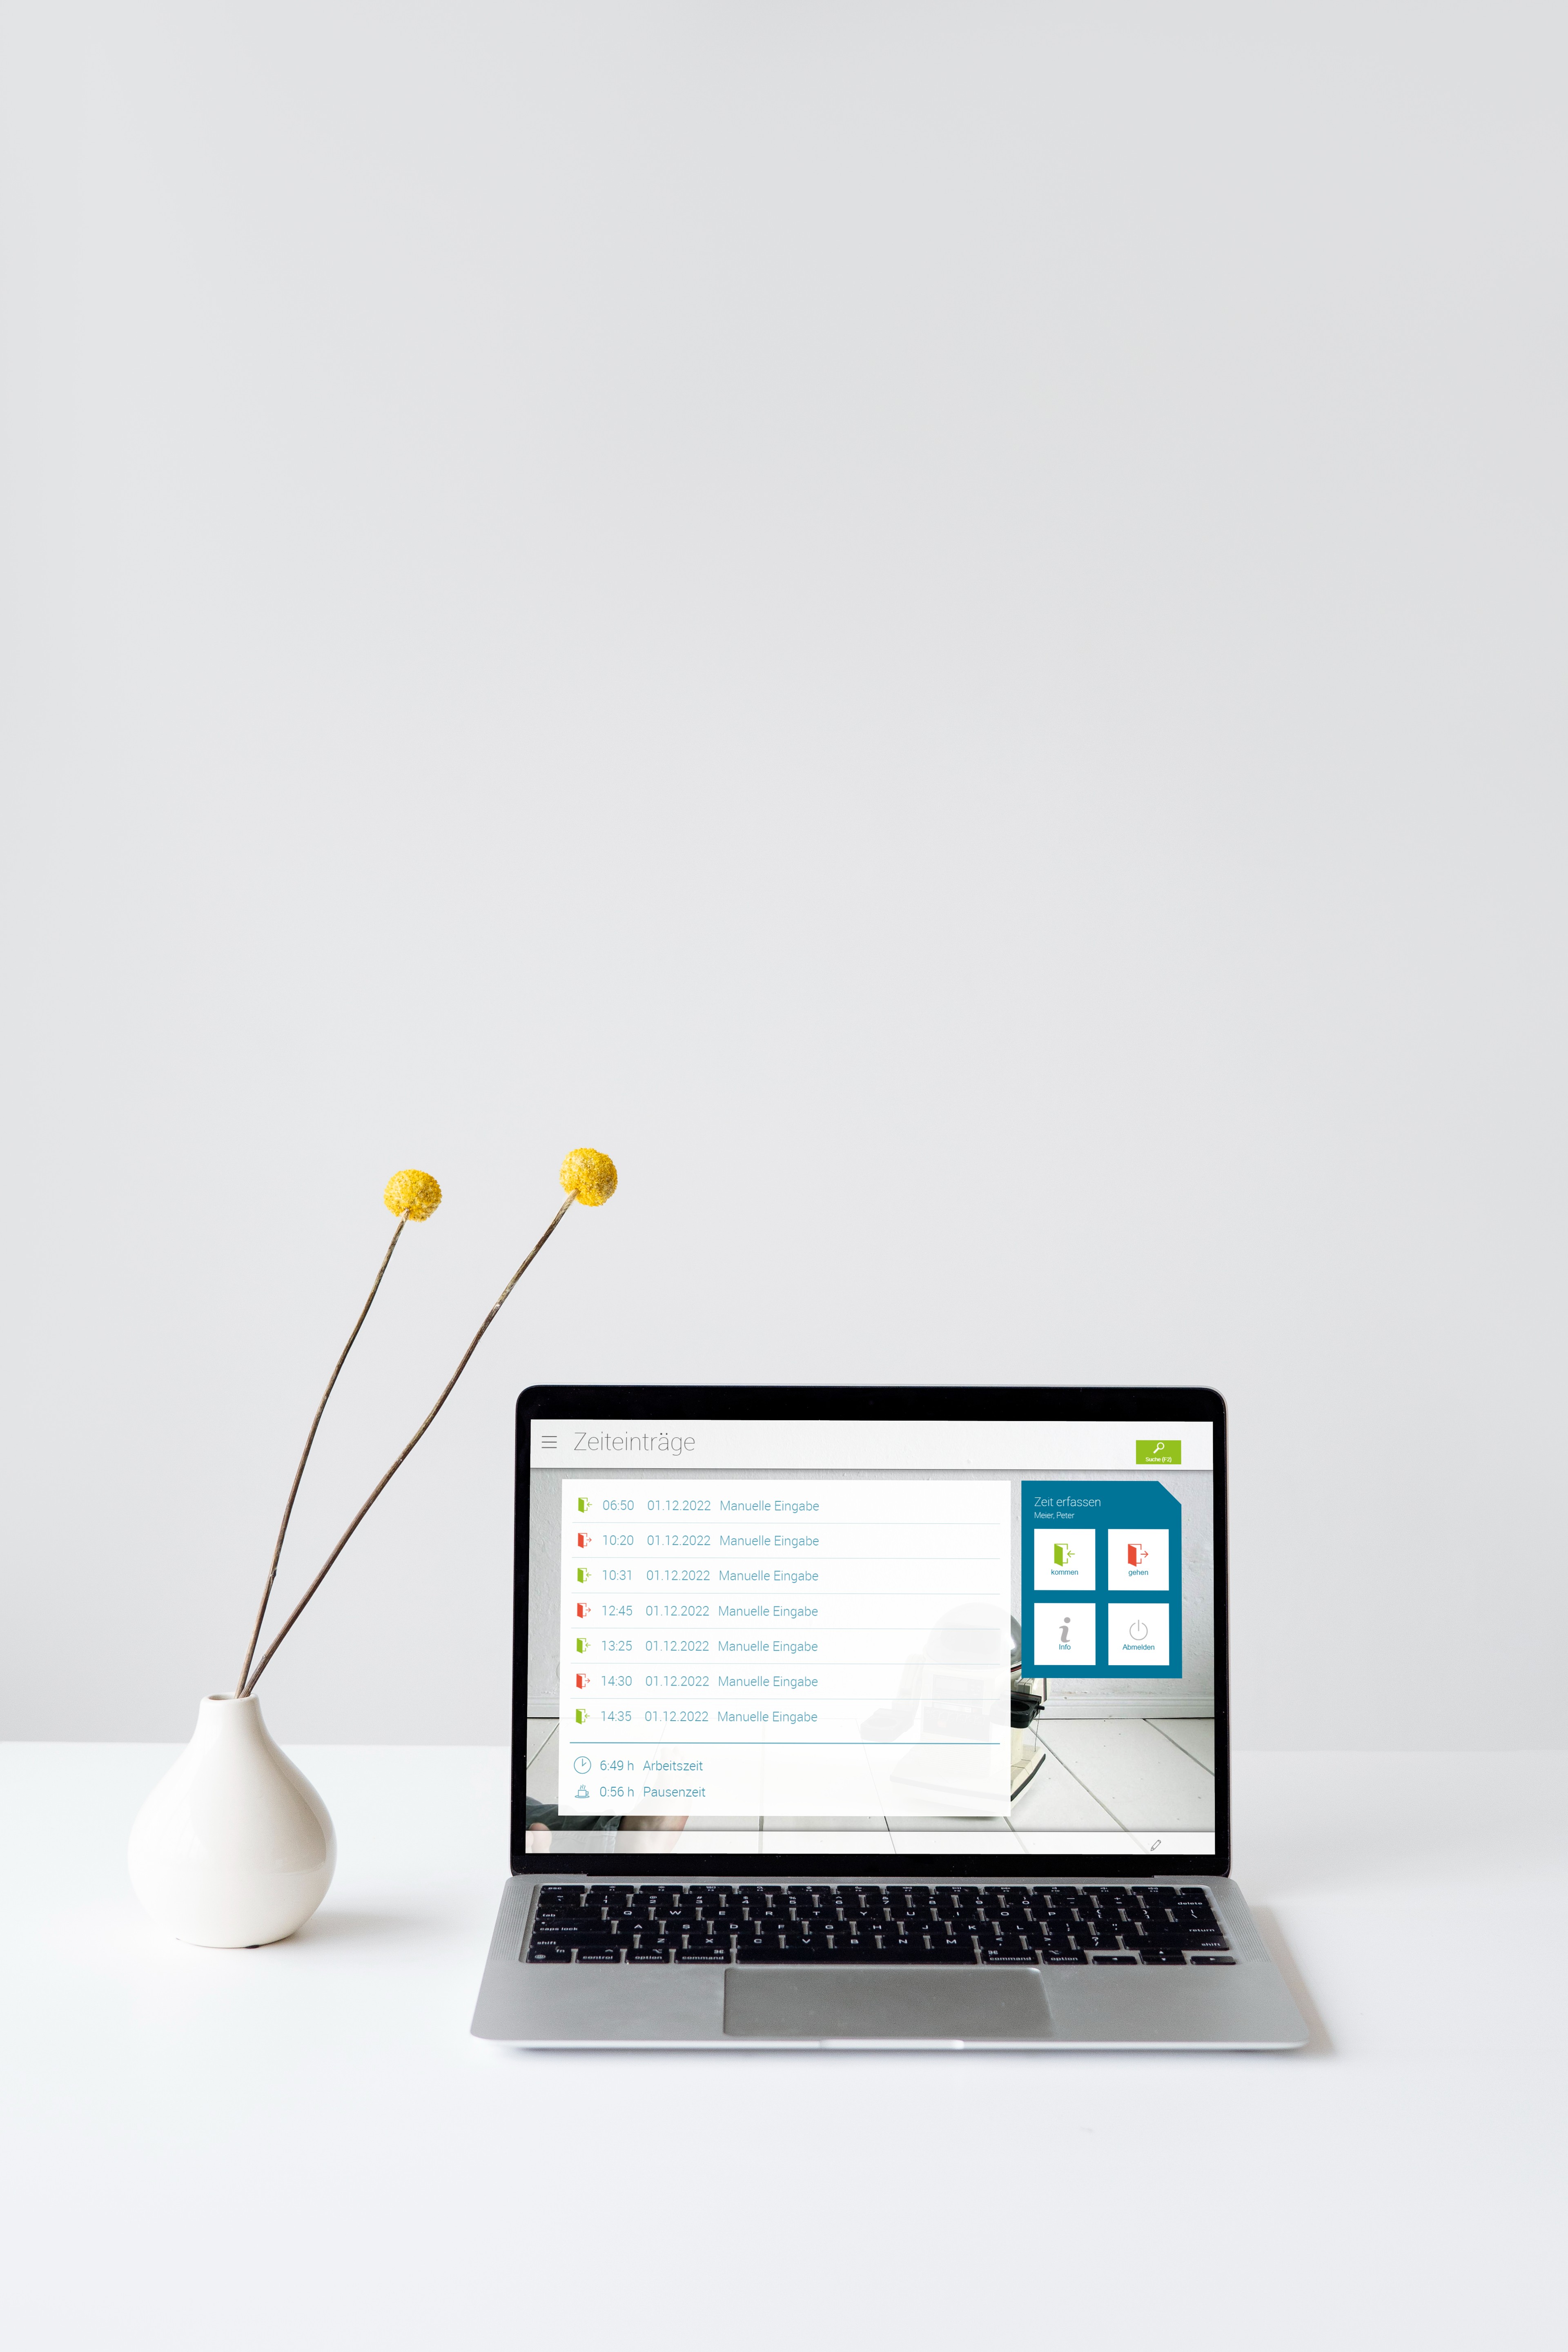 Laptop mit virtuellem Terminal von askDANTE Zeiterfassung. Daneben zwei gelbe Blumen in einer Vase.